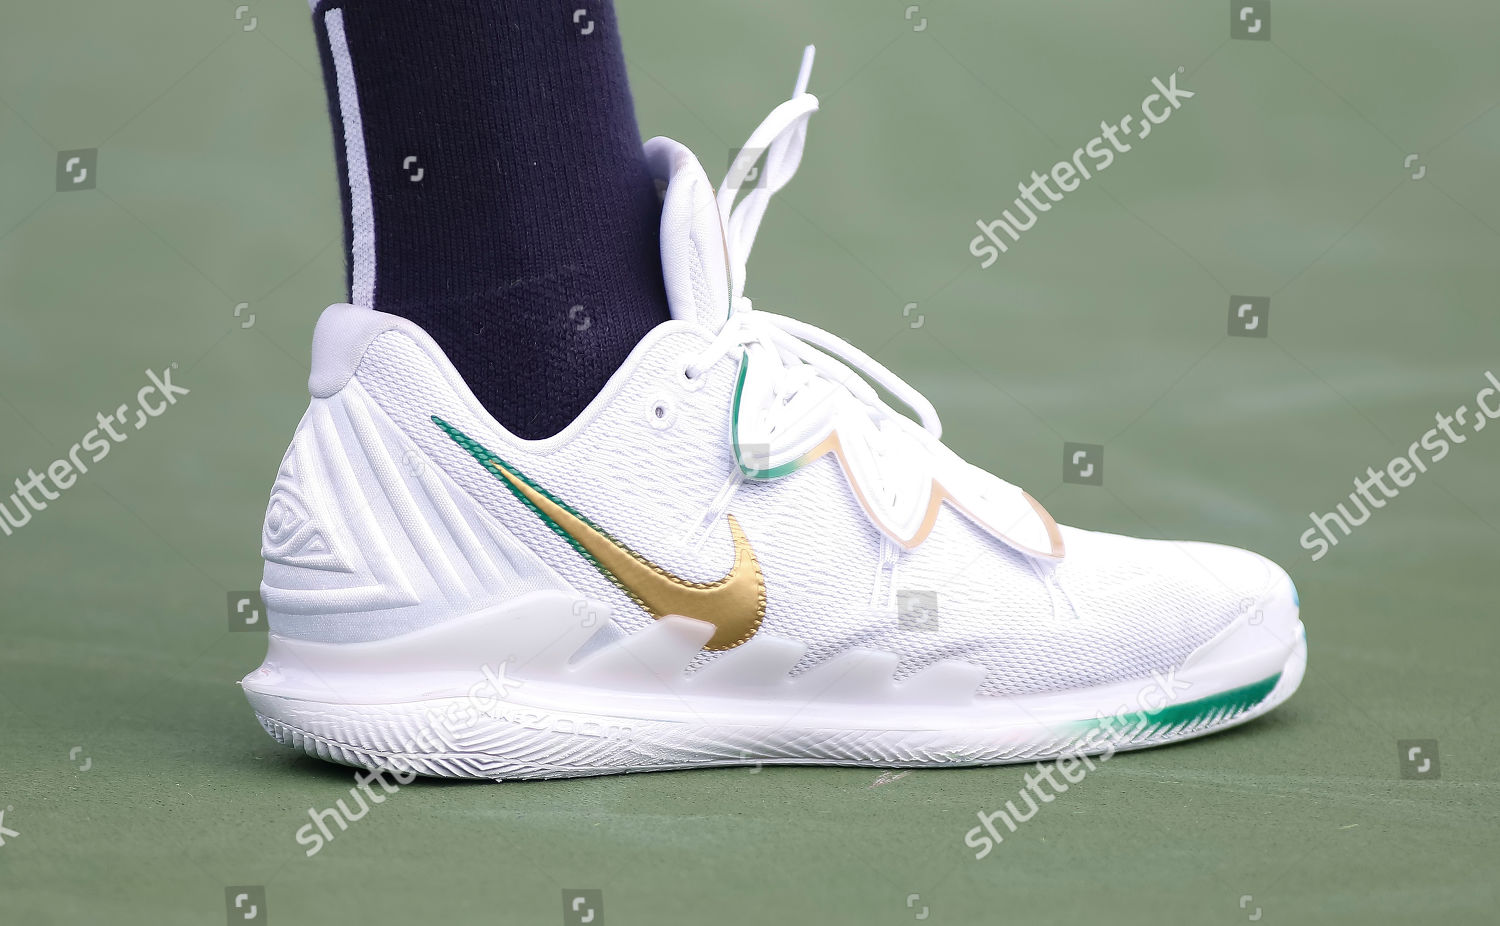 nick kyrgios tennis shoes